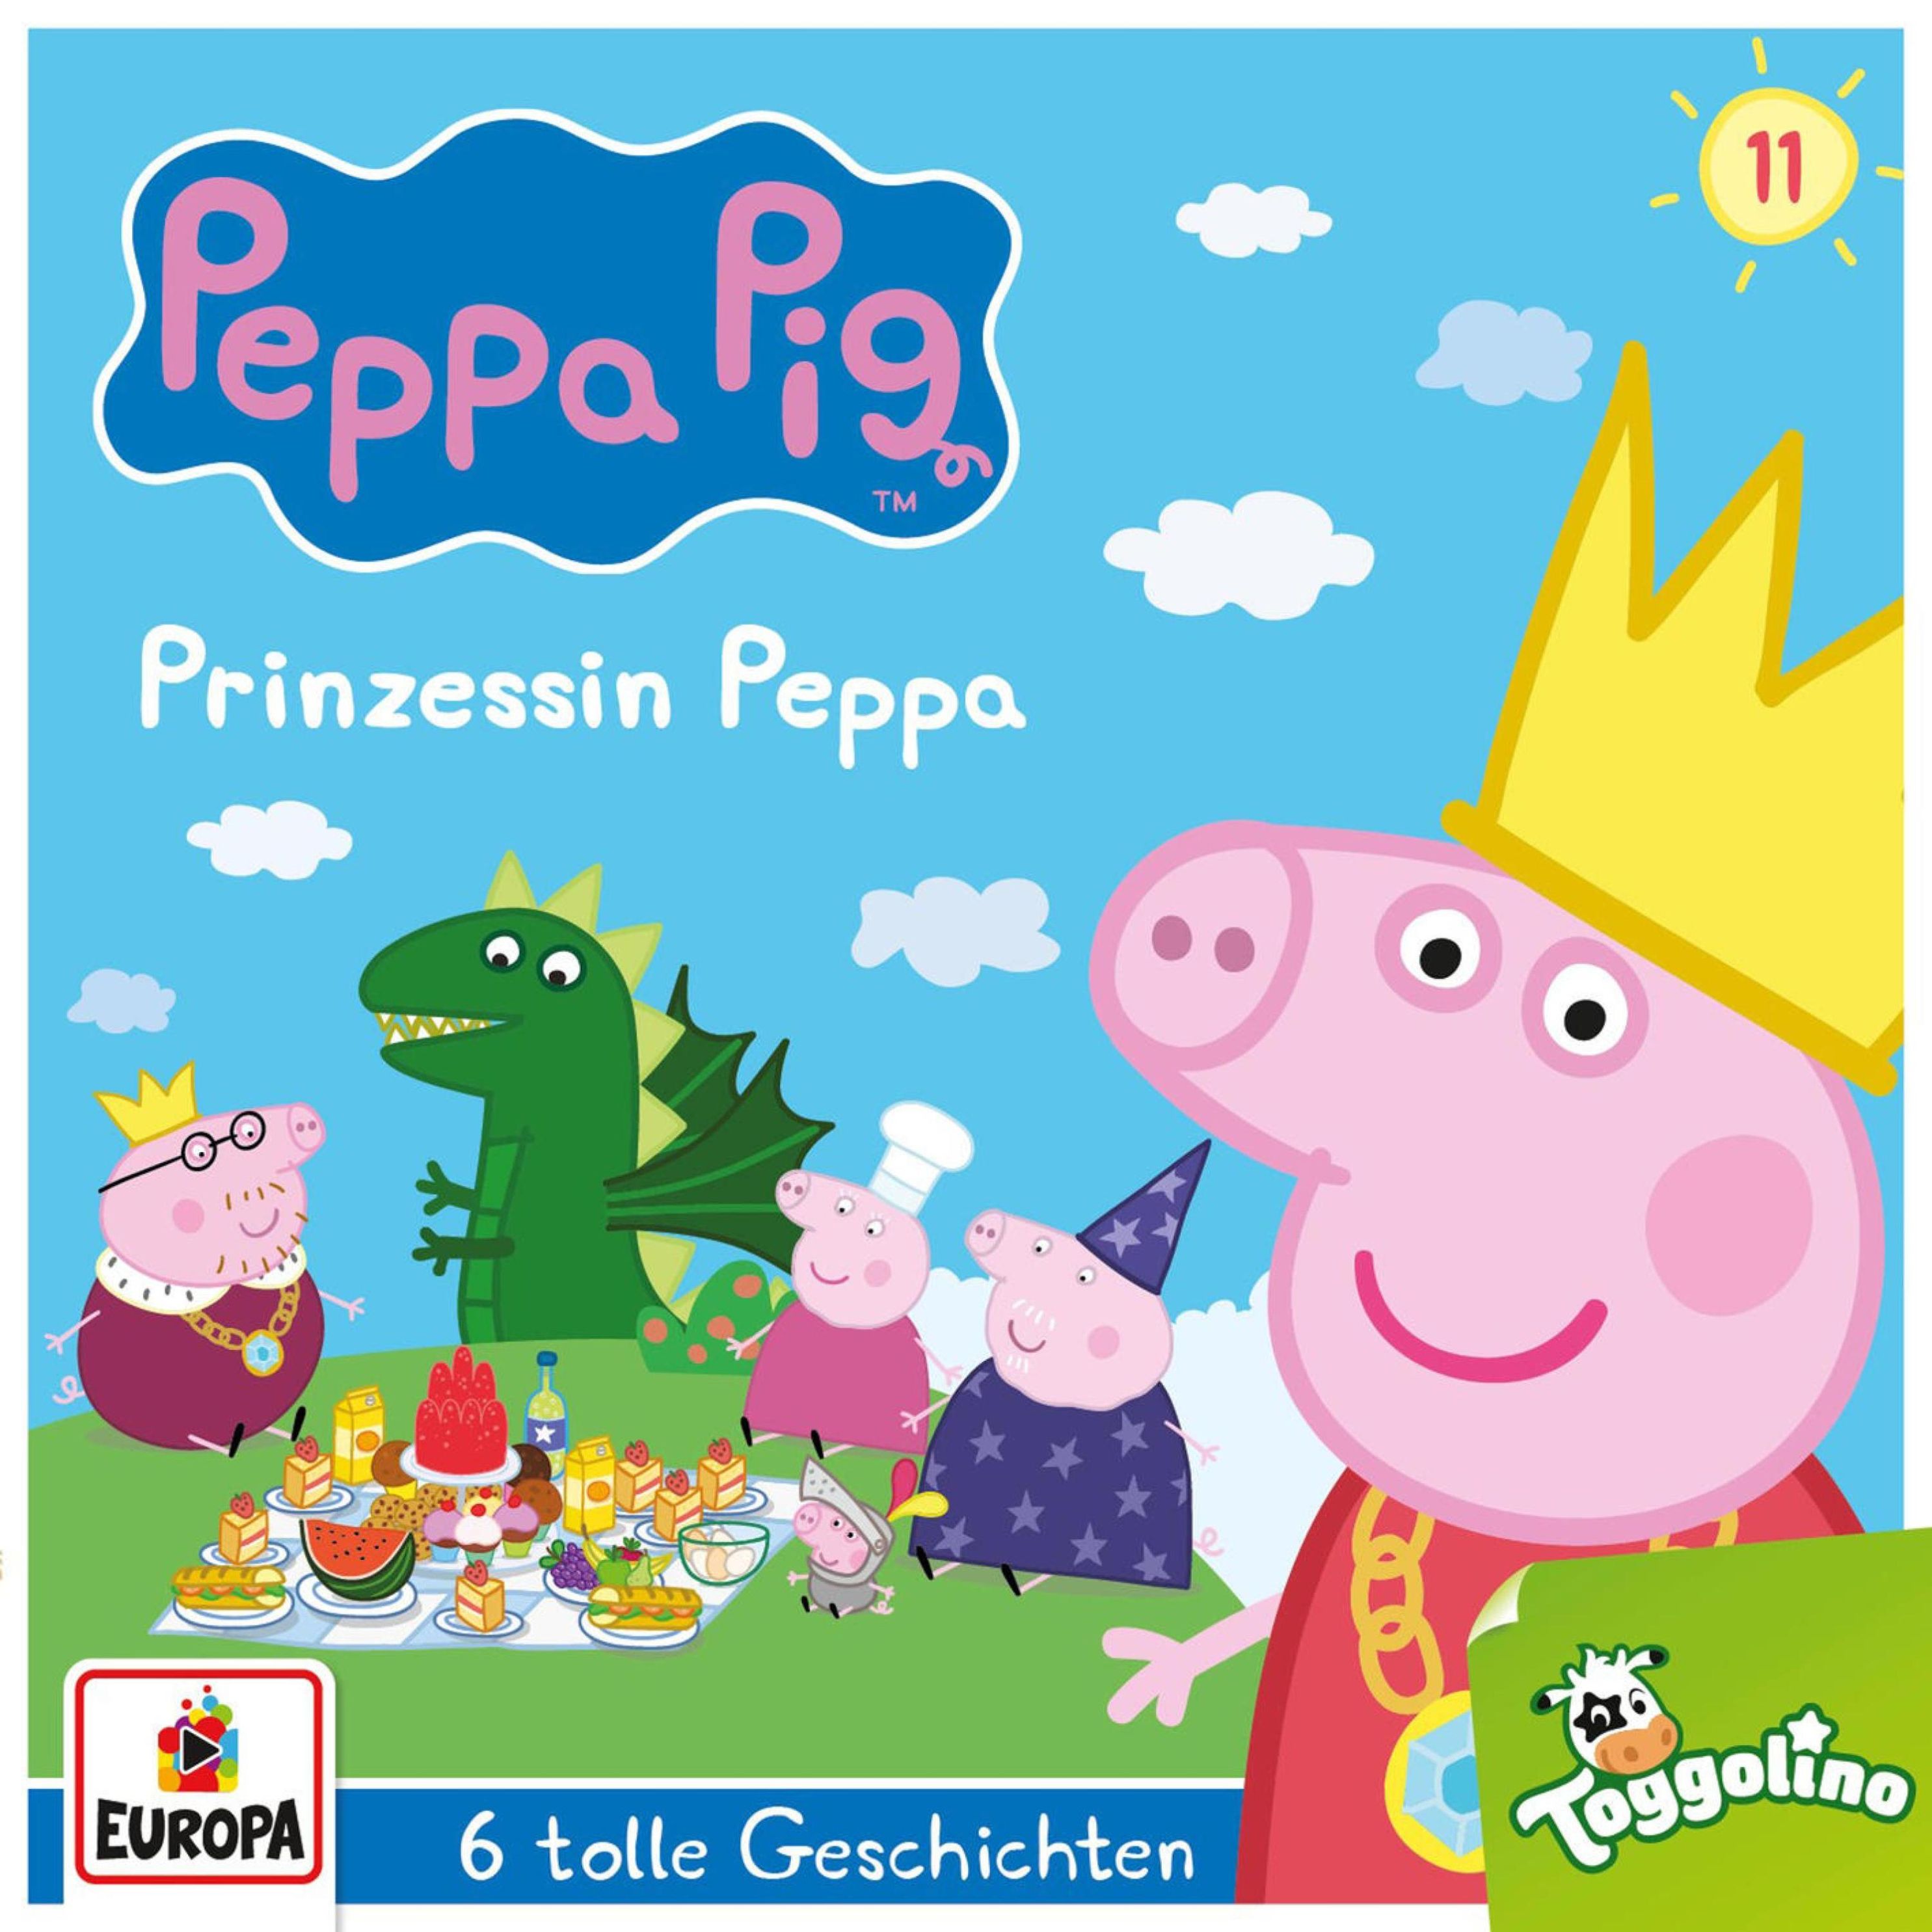 Peppa Pig Hörspiele - 11 - Folge 11: Prinzessin Peppa und 5 weitere  Geschichten Hörbuch Download